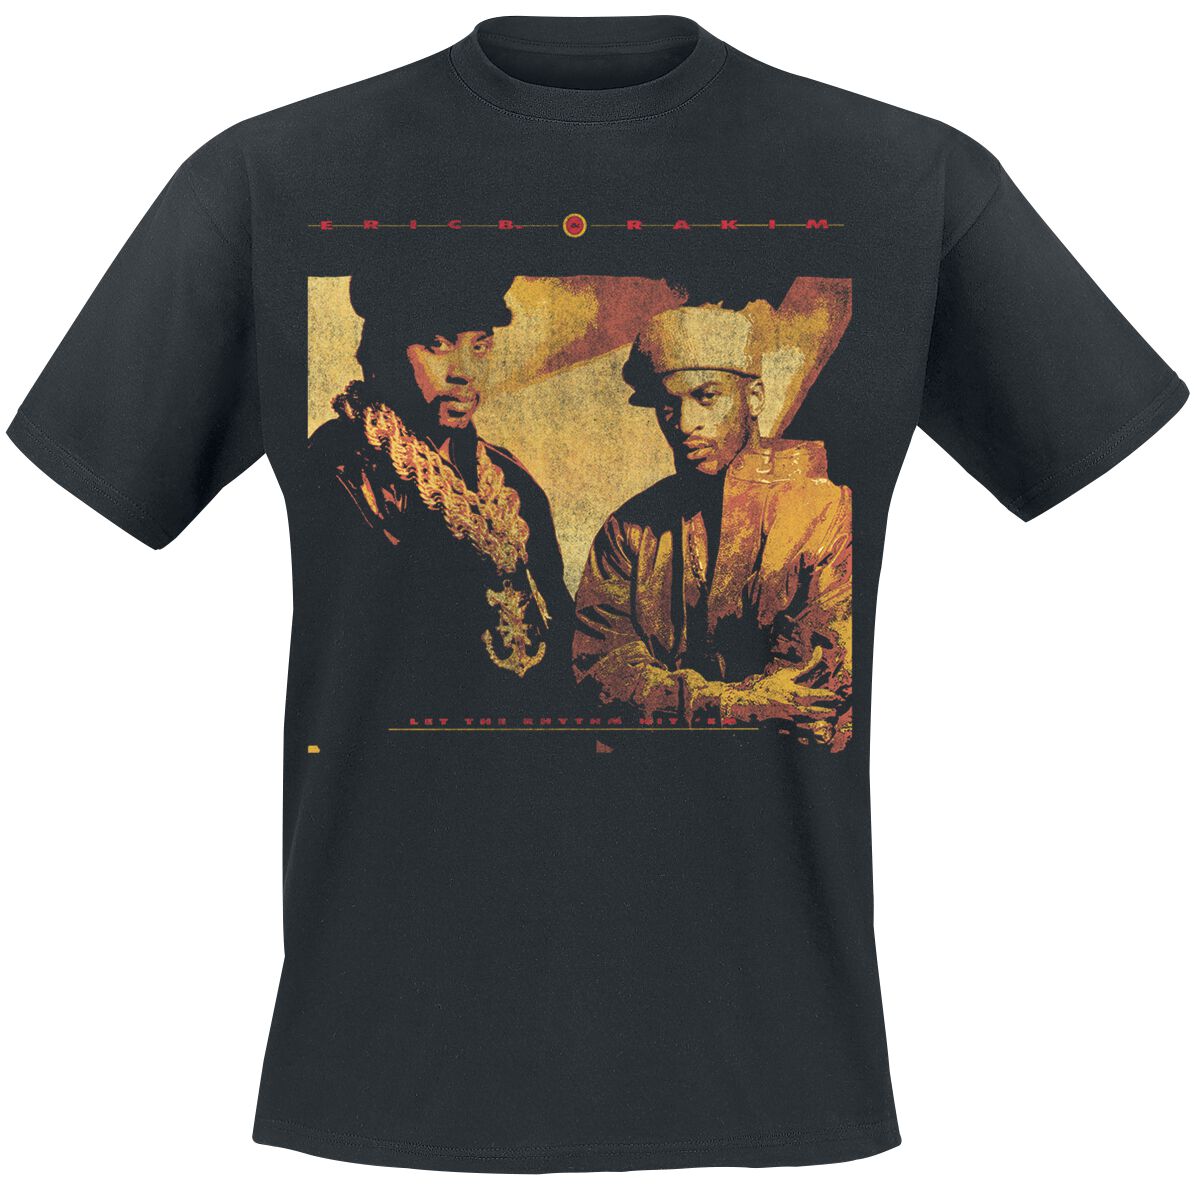 Eric B. & Rakim T-Shirt - Rhythm Hit Em - S bis 3XL - für Männer - Größe 3XL - schwarz  - Lizenziertes Merchandise!